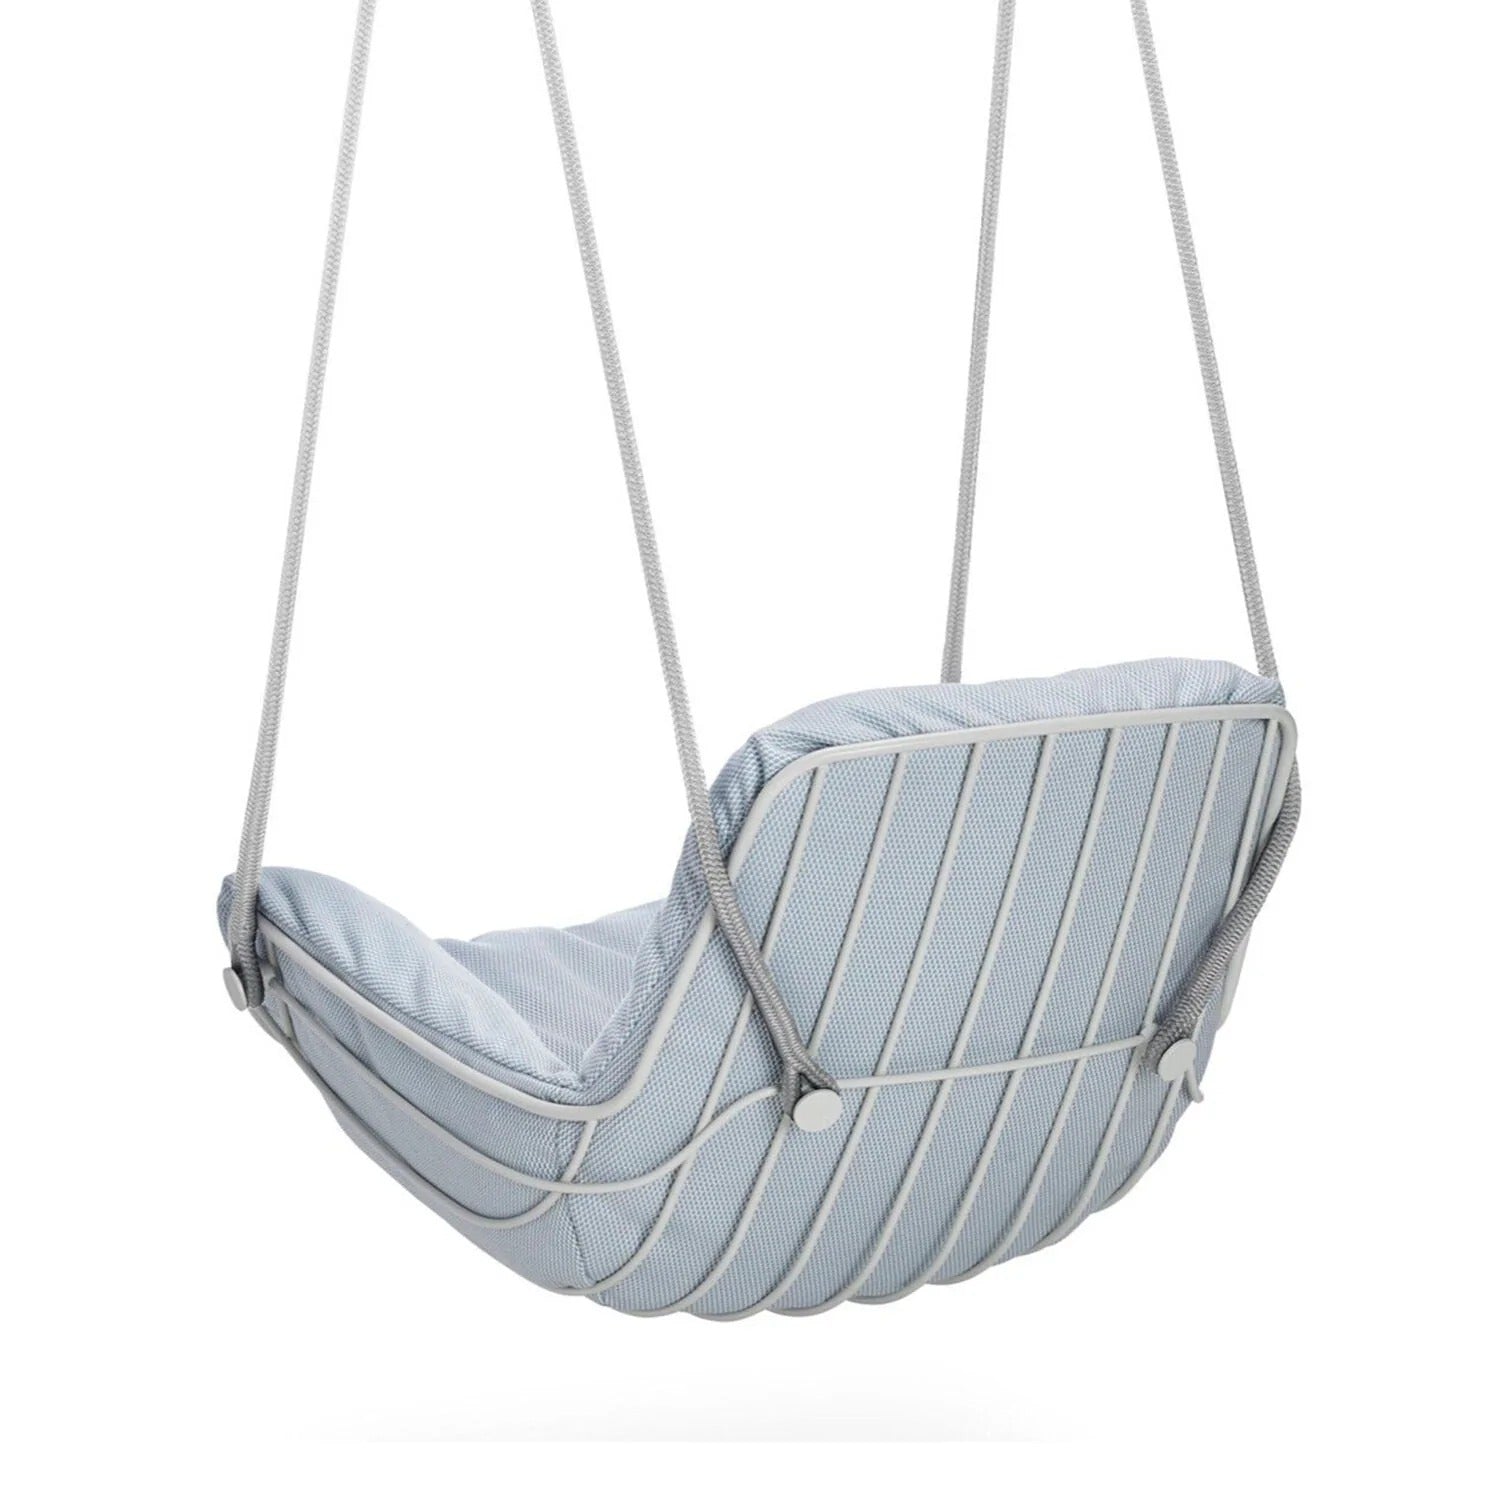 freifrau | leyasol outdoor lounge swing seat | lopi beldi + grey white frame